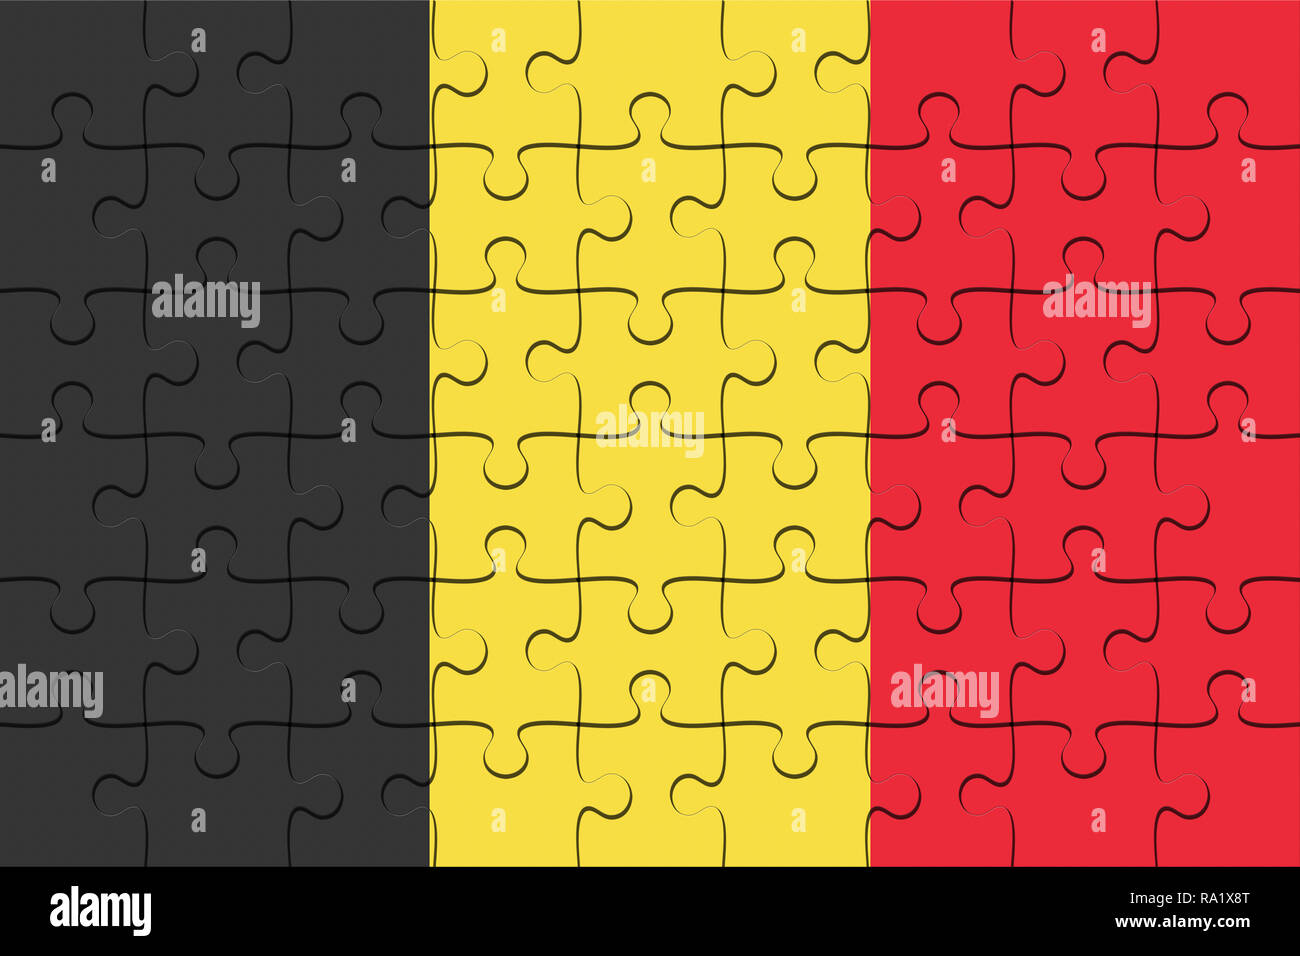 Belgium Flag Jigsaw Puzzle, 3d illustration background Stock Photo - Alamy